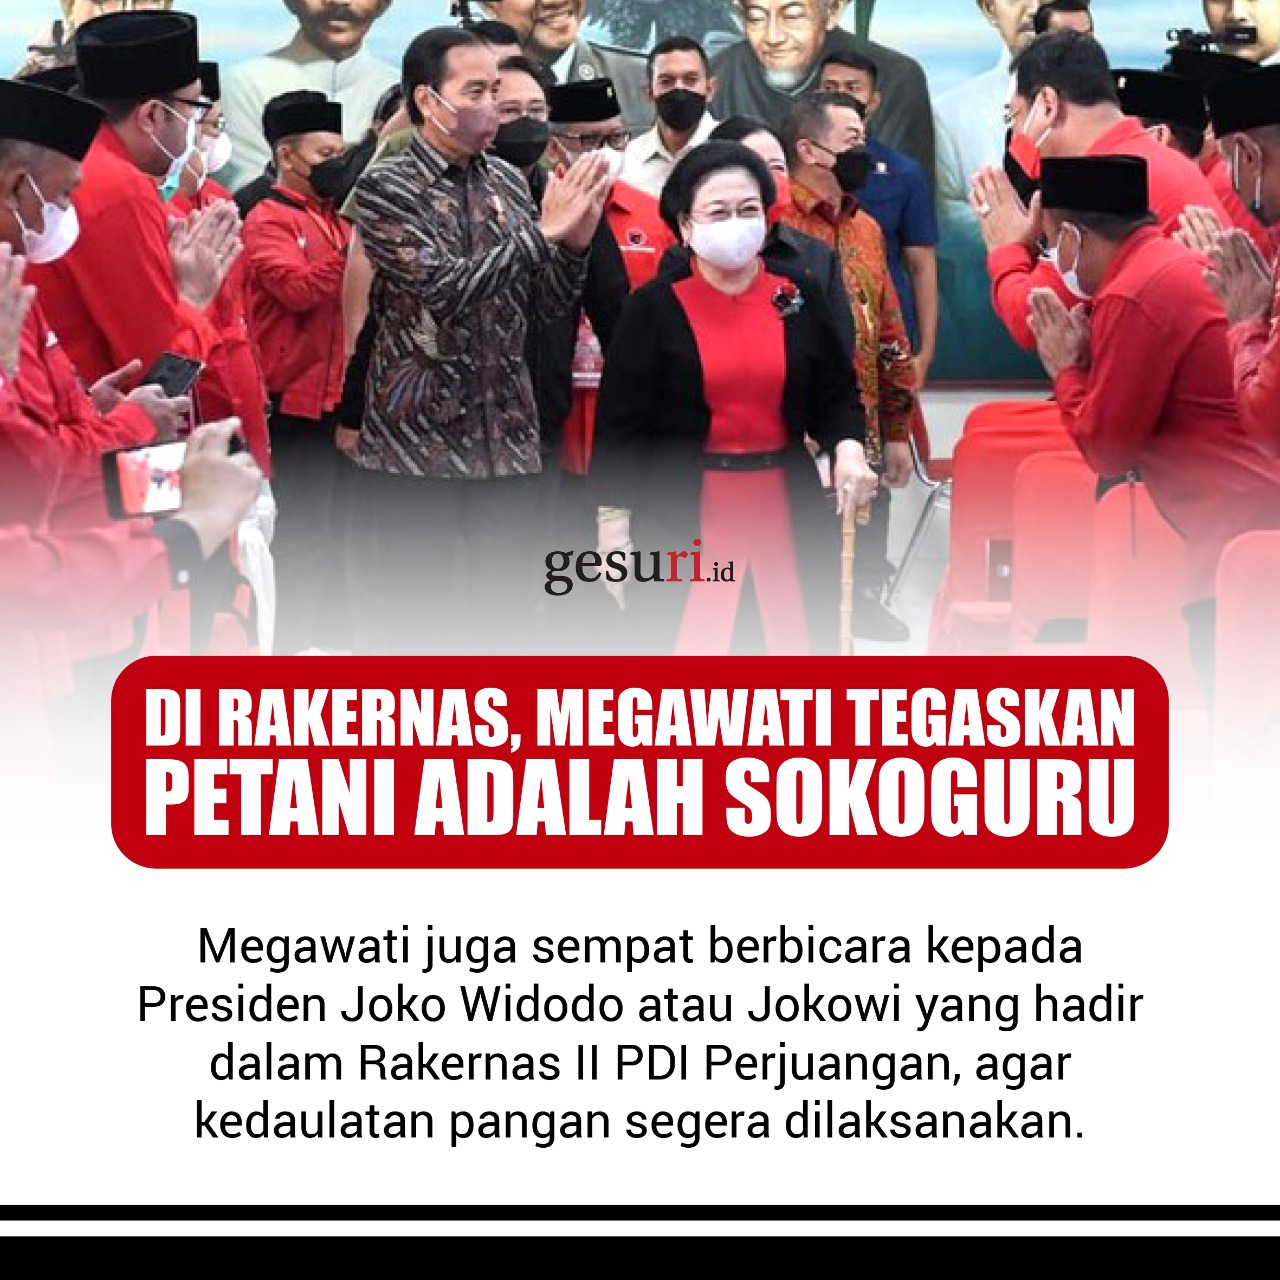 Megawati Tegaskan Petani adalah Sokoguru (2/3)